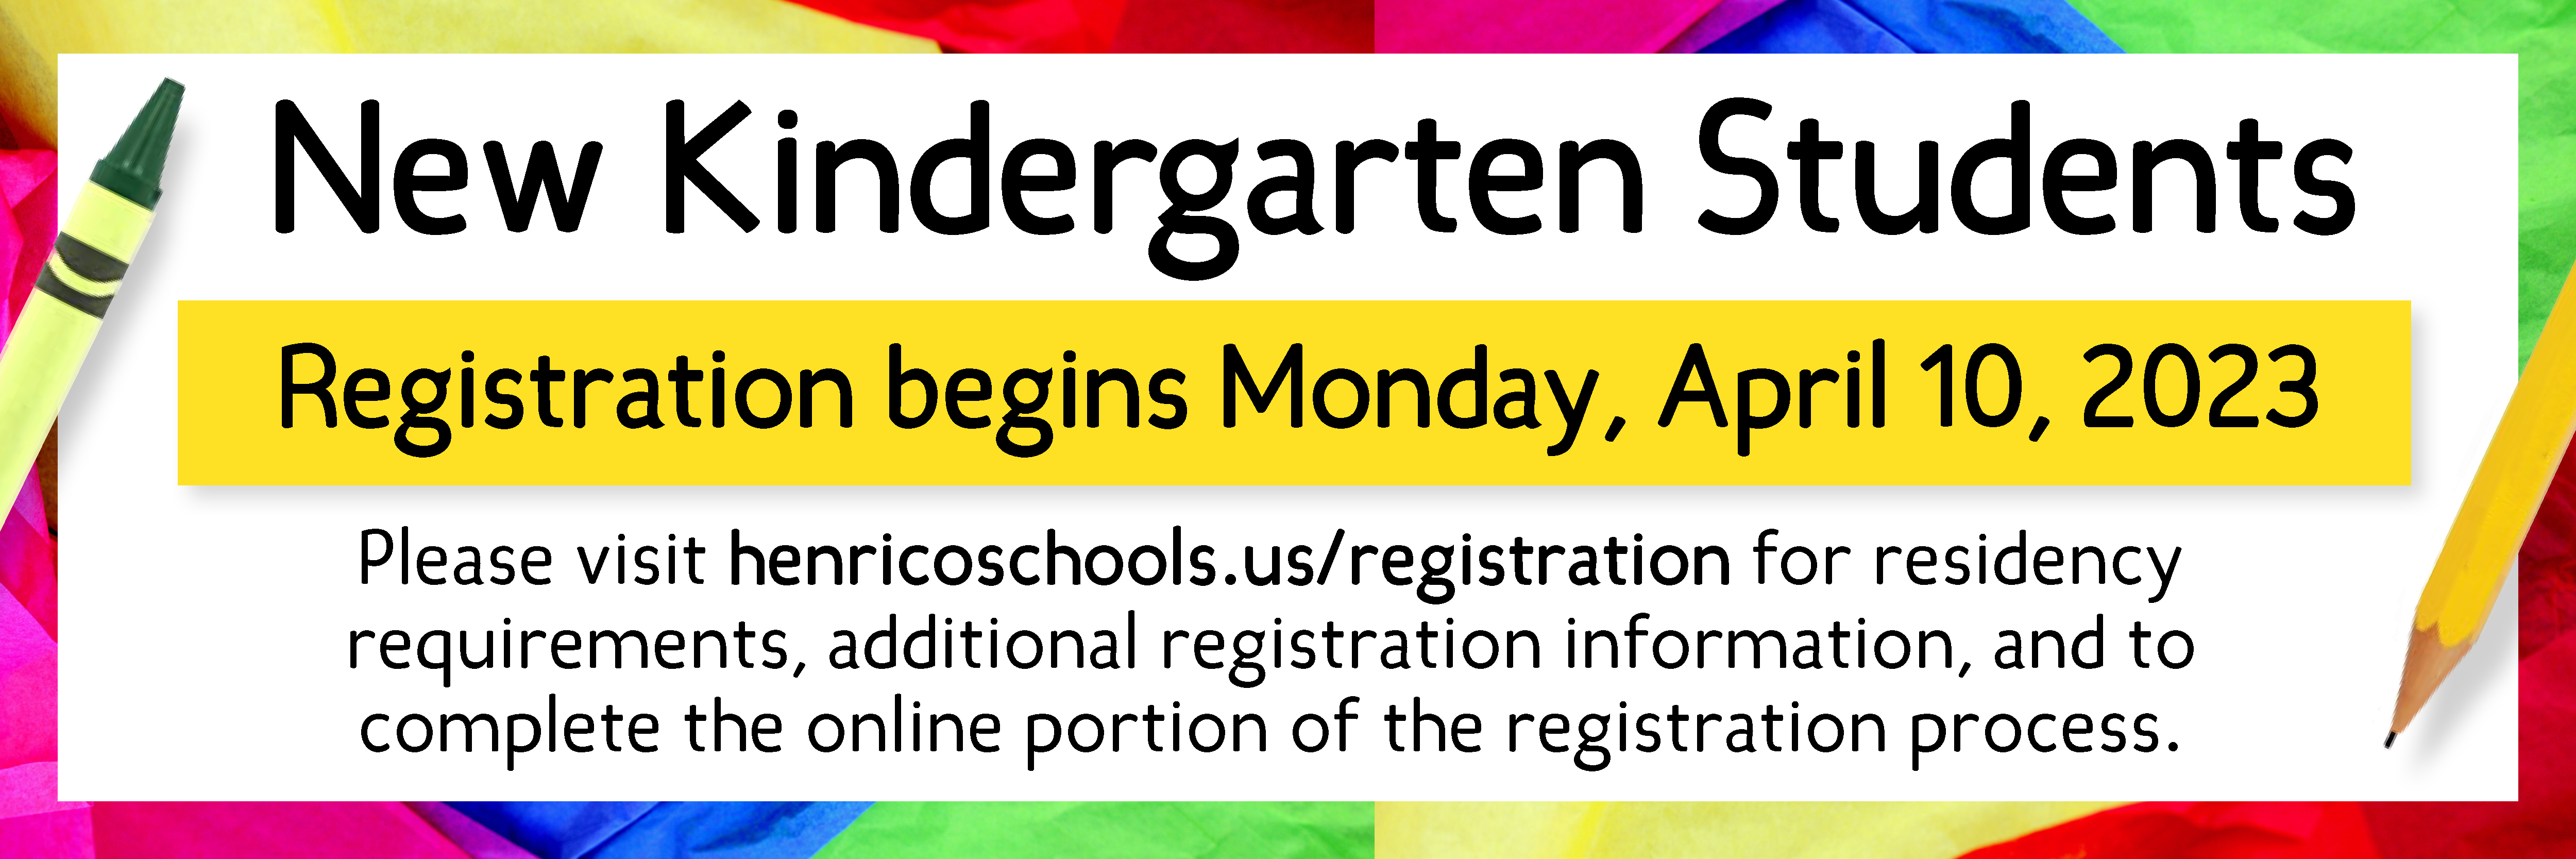 New Kindergarten Students registration begins Monday, April 10, 2023